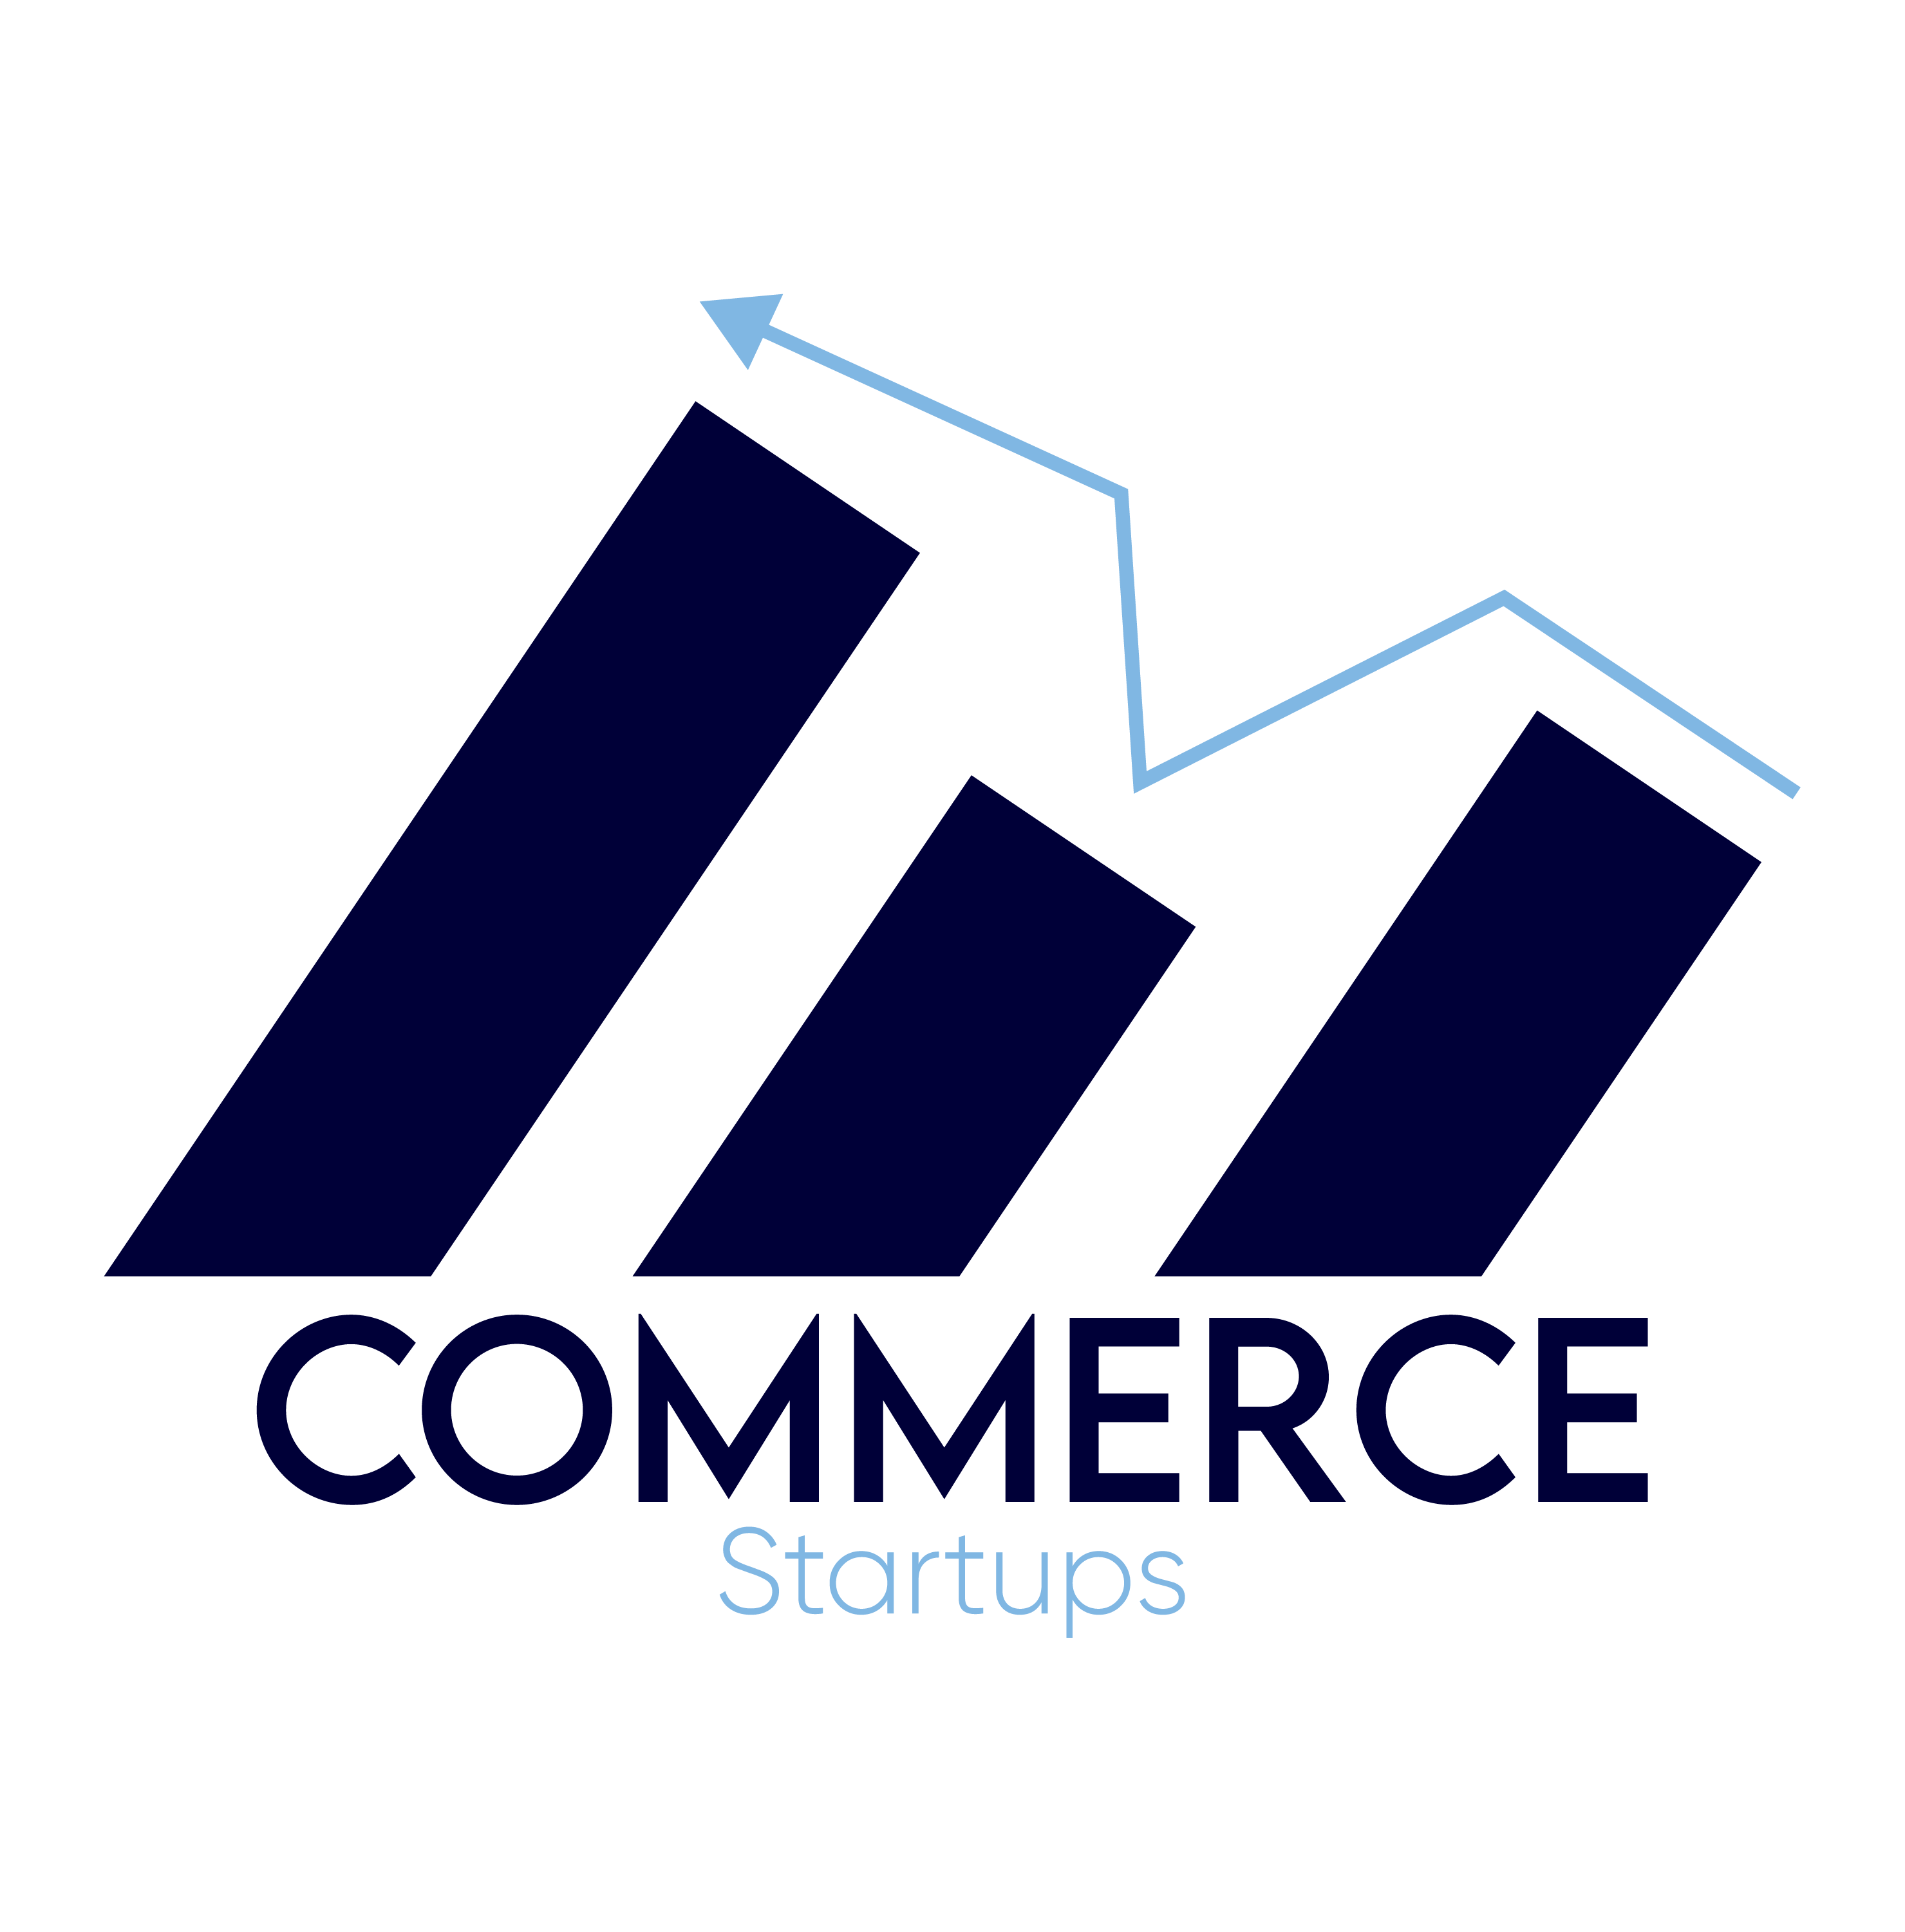 Commerce startups